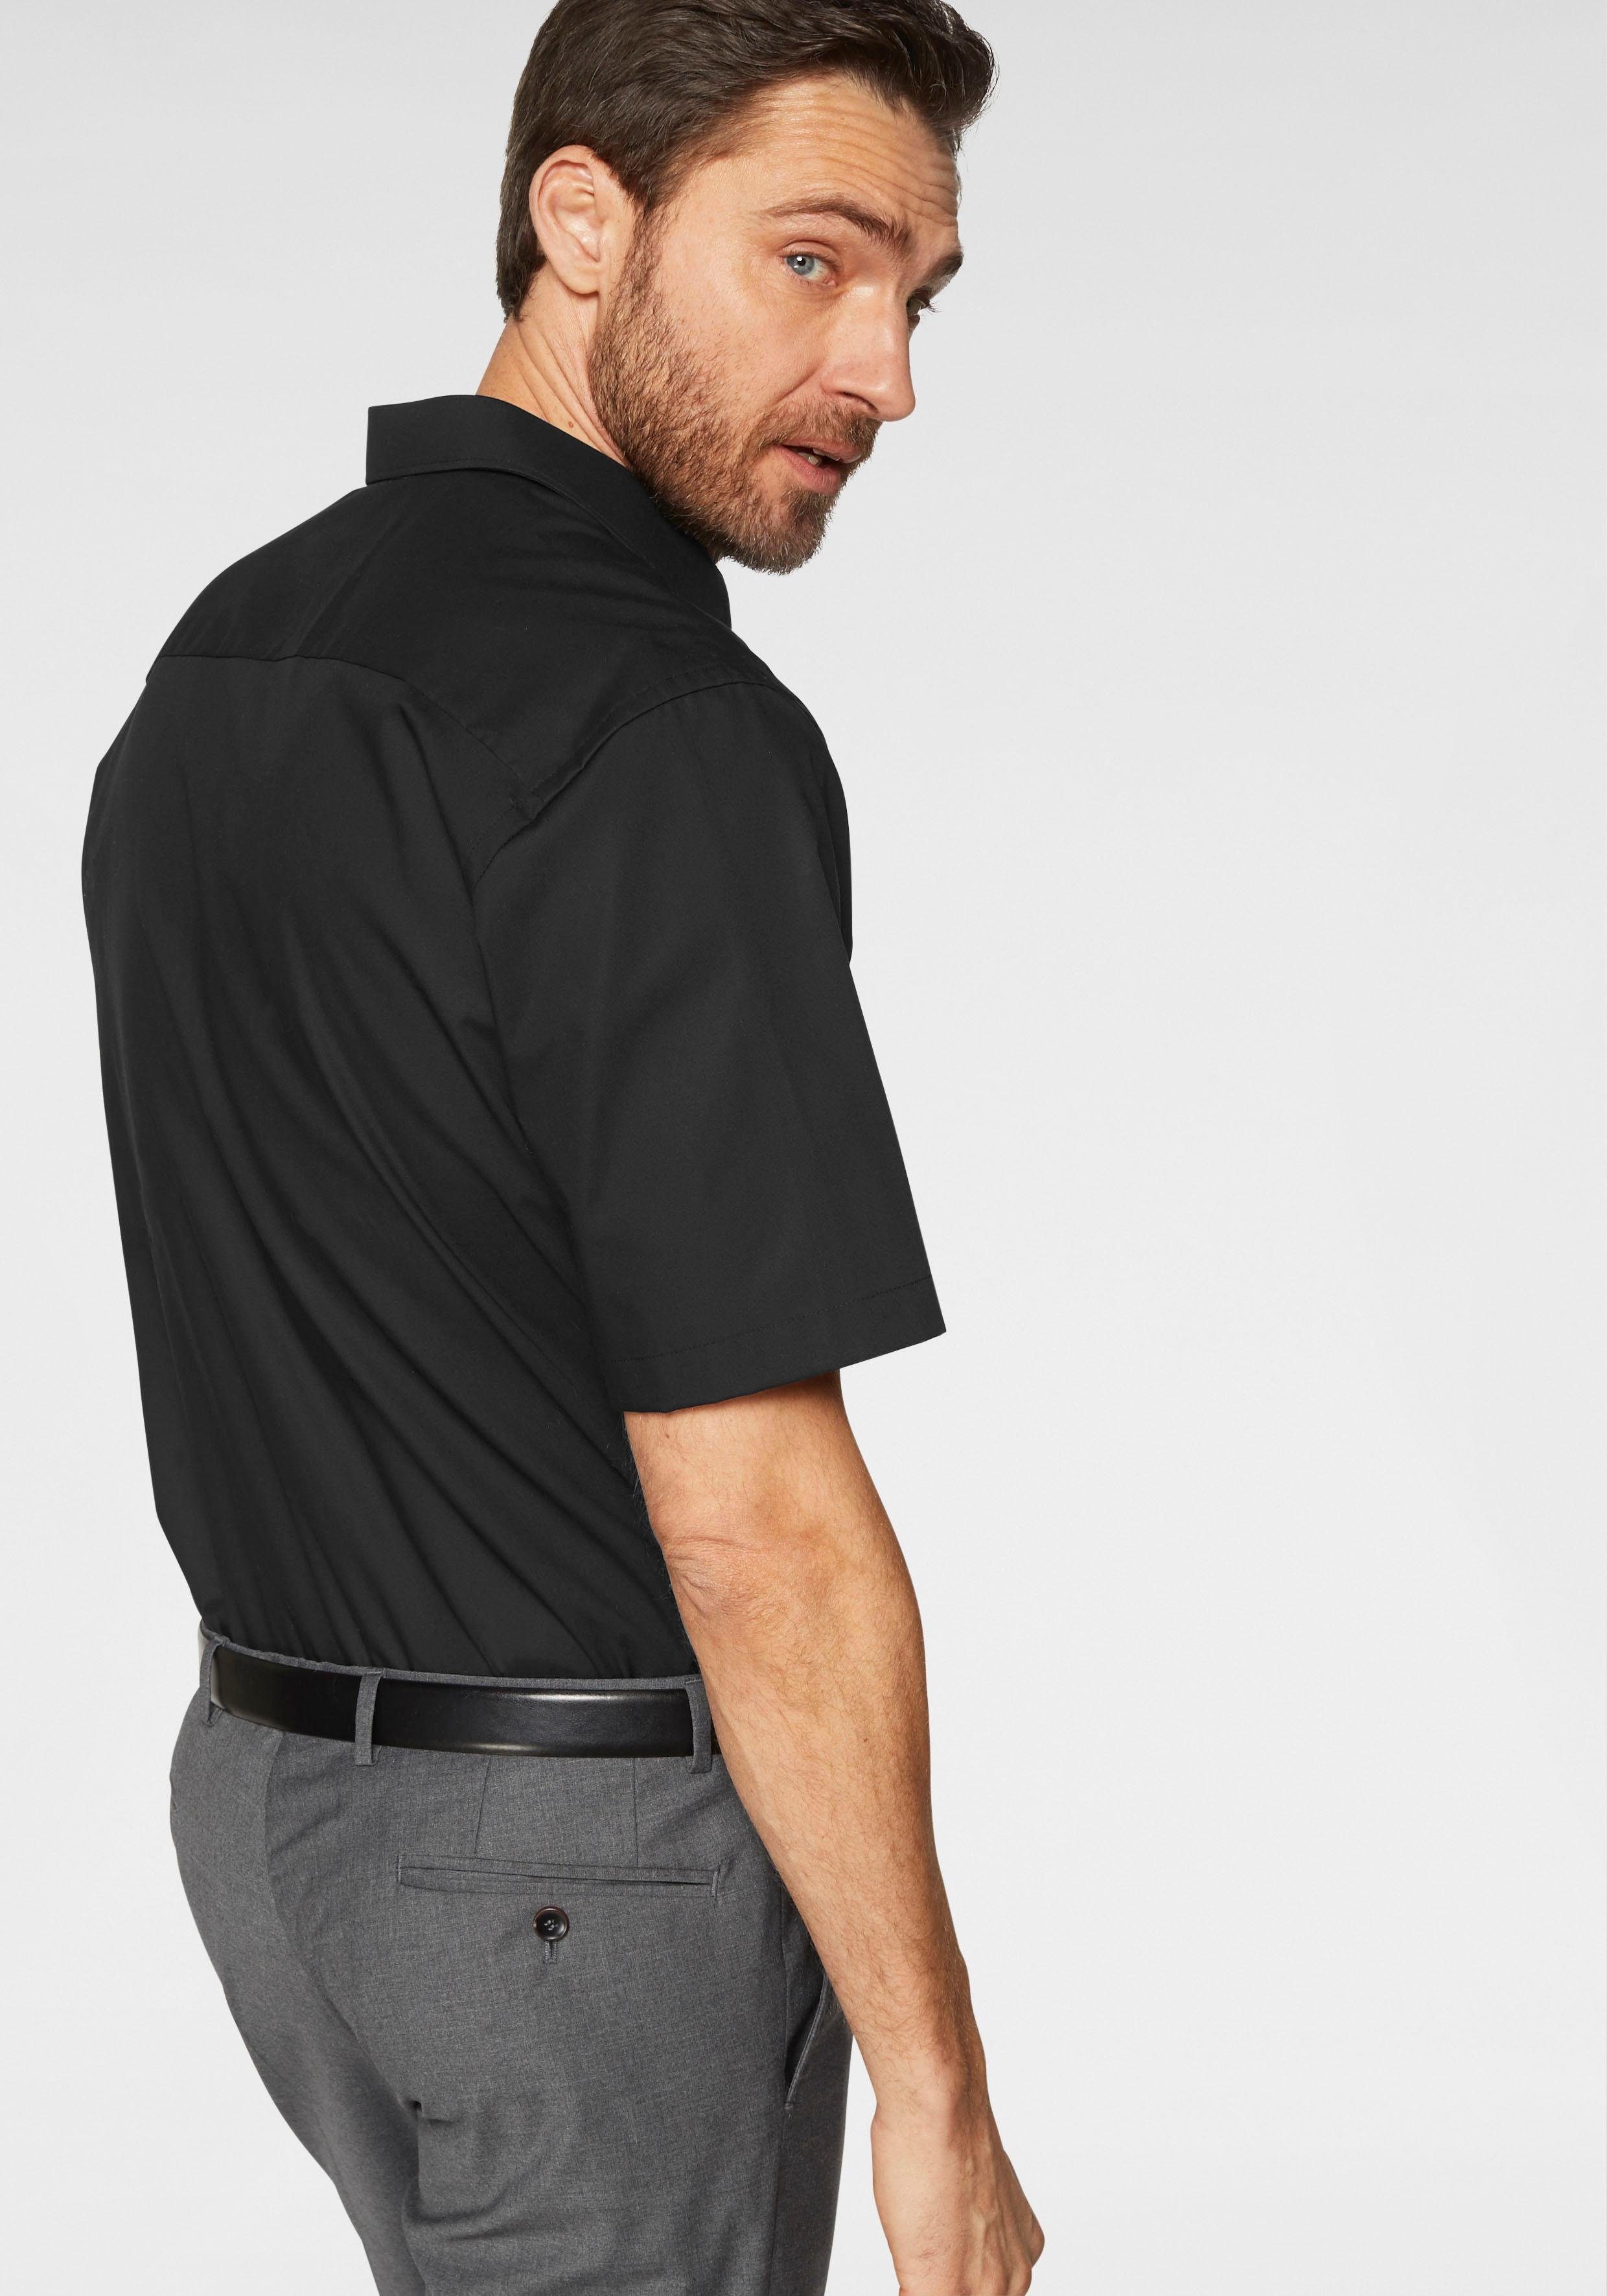 Brusttasche, Kurzarmhemd Luxor OLYMP schwarz comfort-fit Businesshemd mit bügelfrei